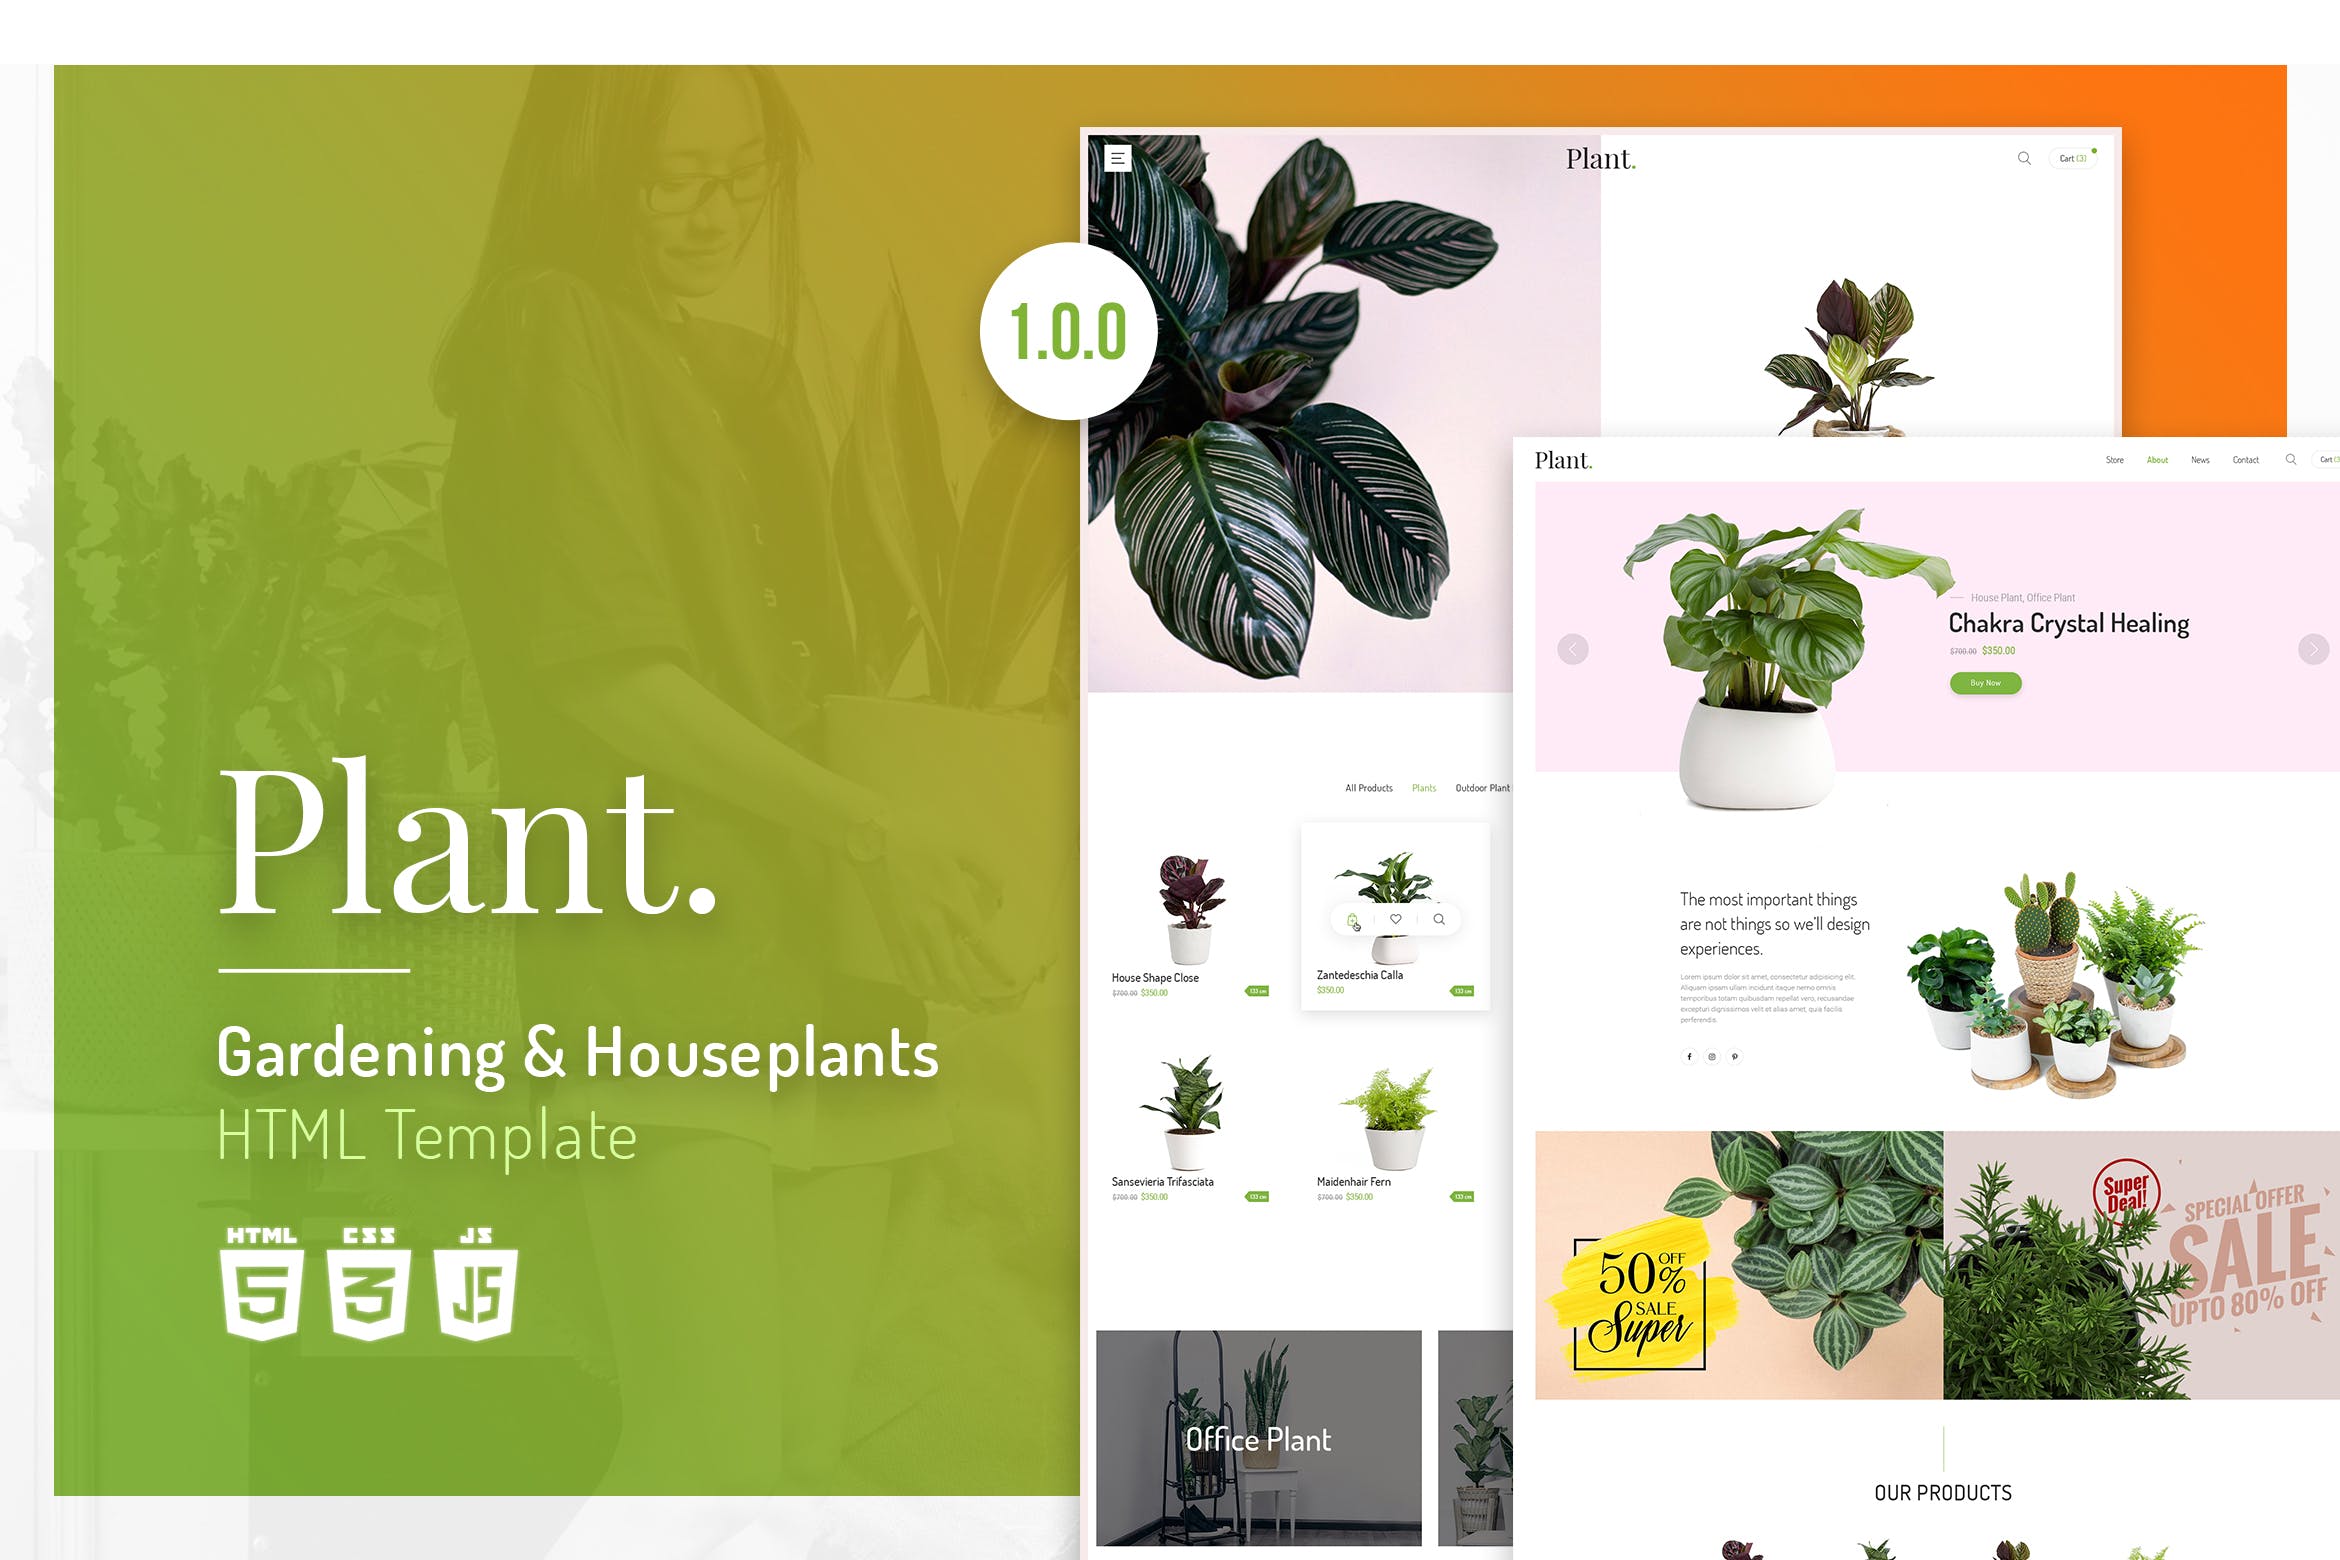 植物园艺设计/盆栽植物网上商城HTML模板非凡图库精选 Plant | Gardening & Houseplants HTML Template插图